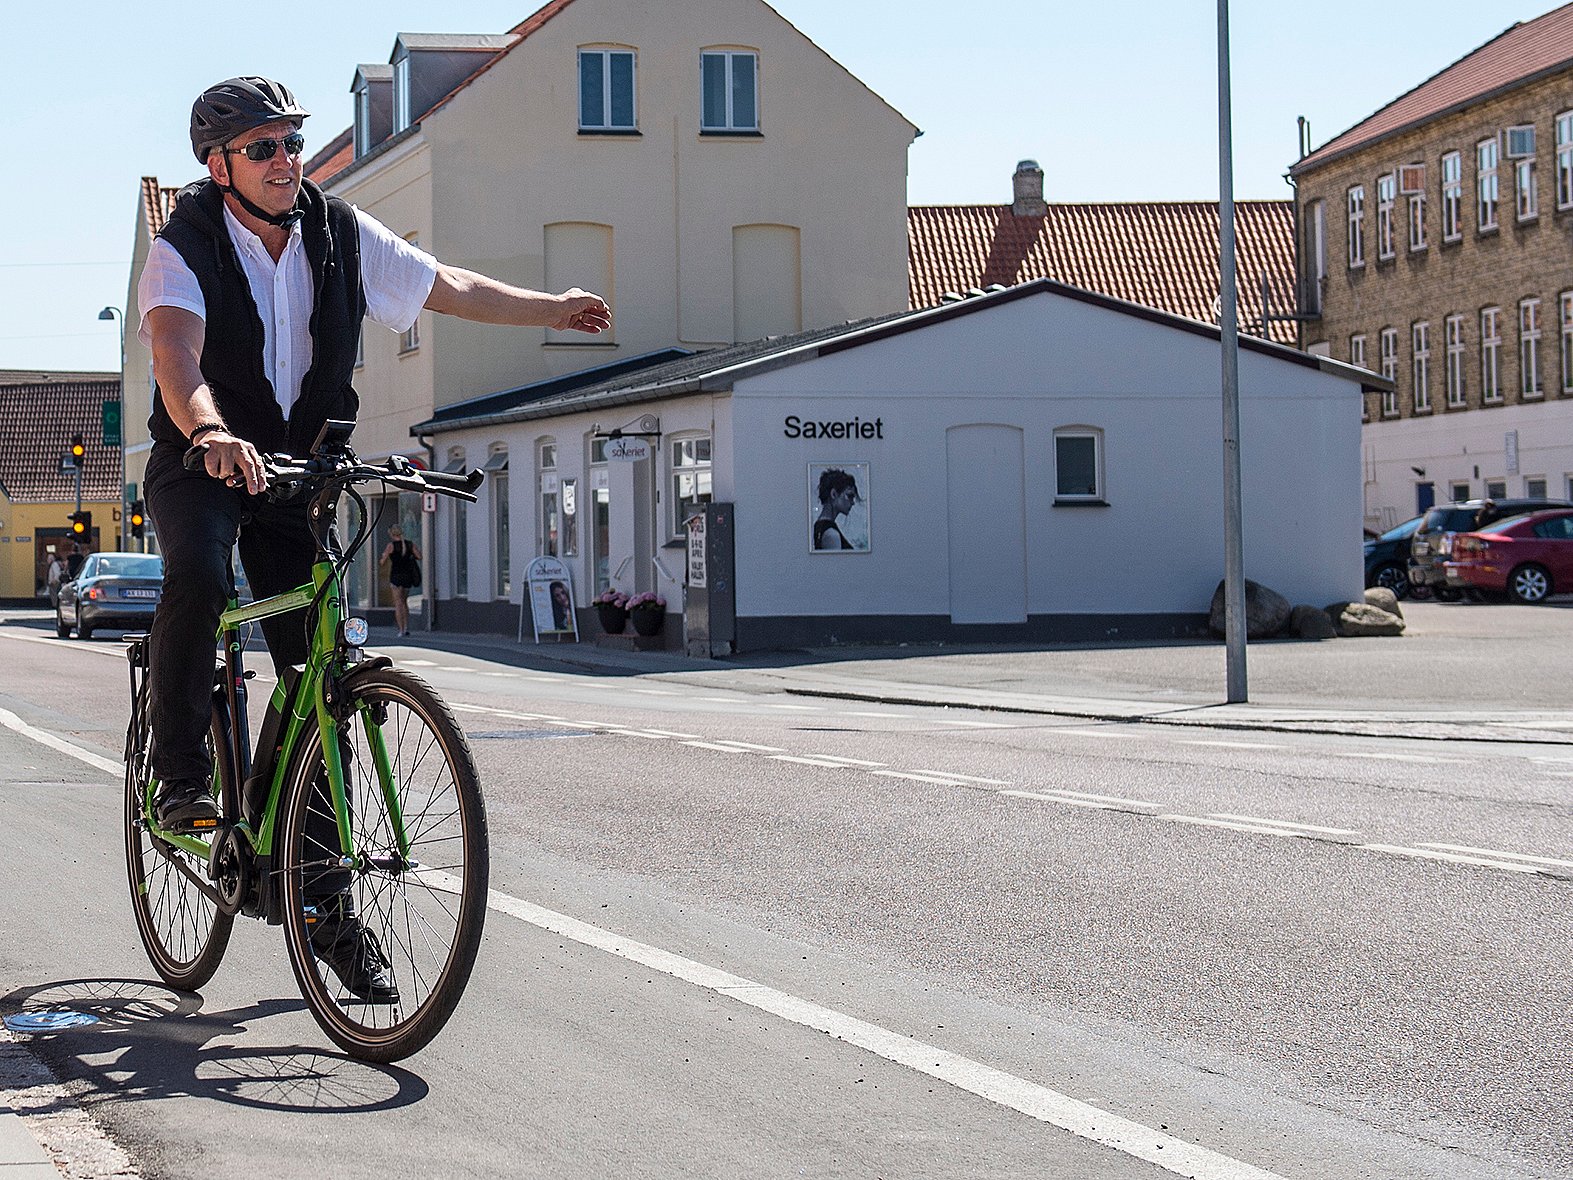 Borgmester-dyst cykel: Se hvem der fører feltet | TV 2 Kosmopol